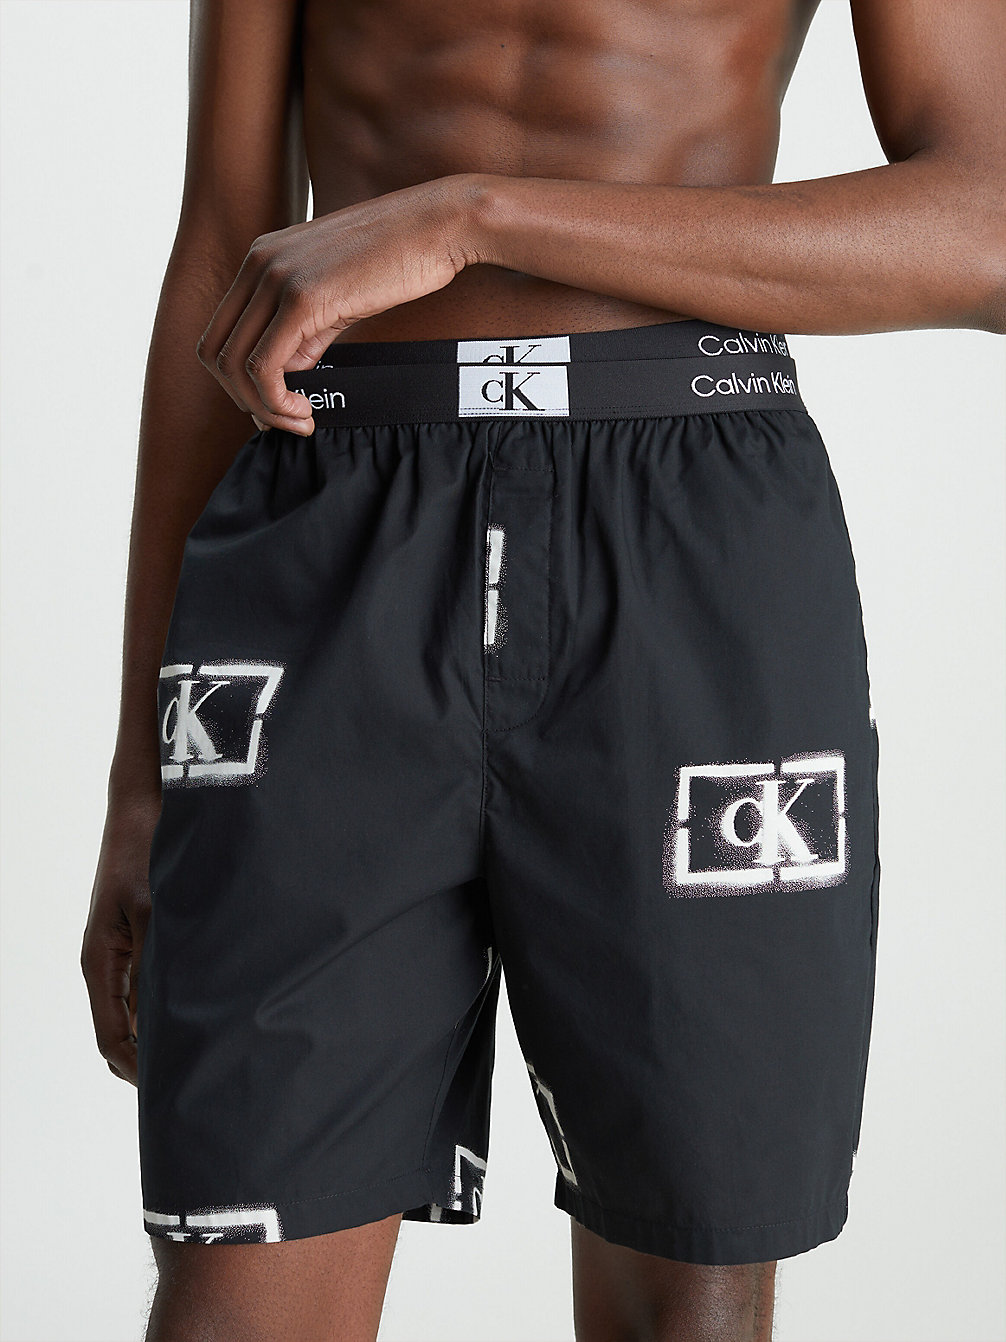 STENCIL LOGO PRINT_BLACK Pyjama-Shorts Aus Bio-Baumwolle - Ck96 undefined Herren Calvin Klein